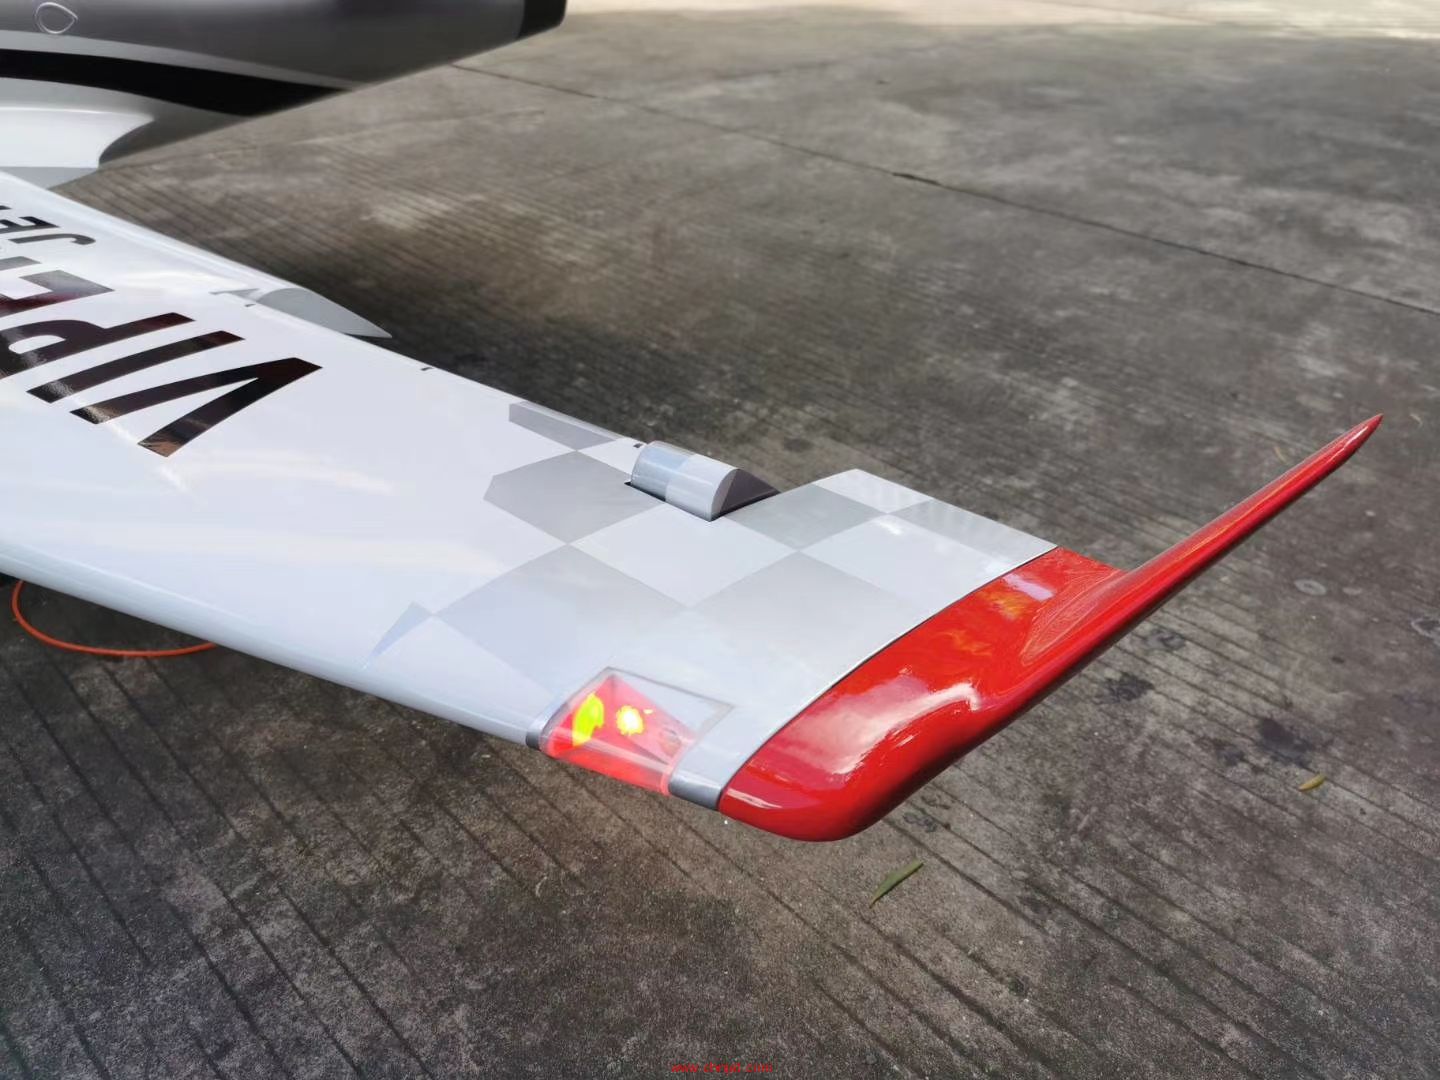 翼展2.5米 Viper涡喷模型飞机